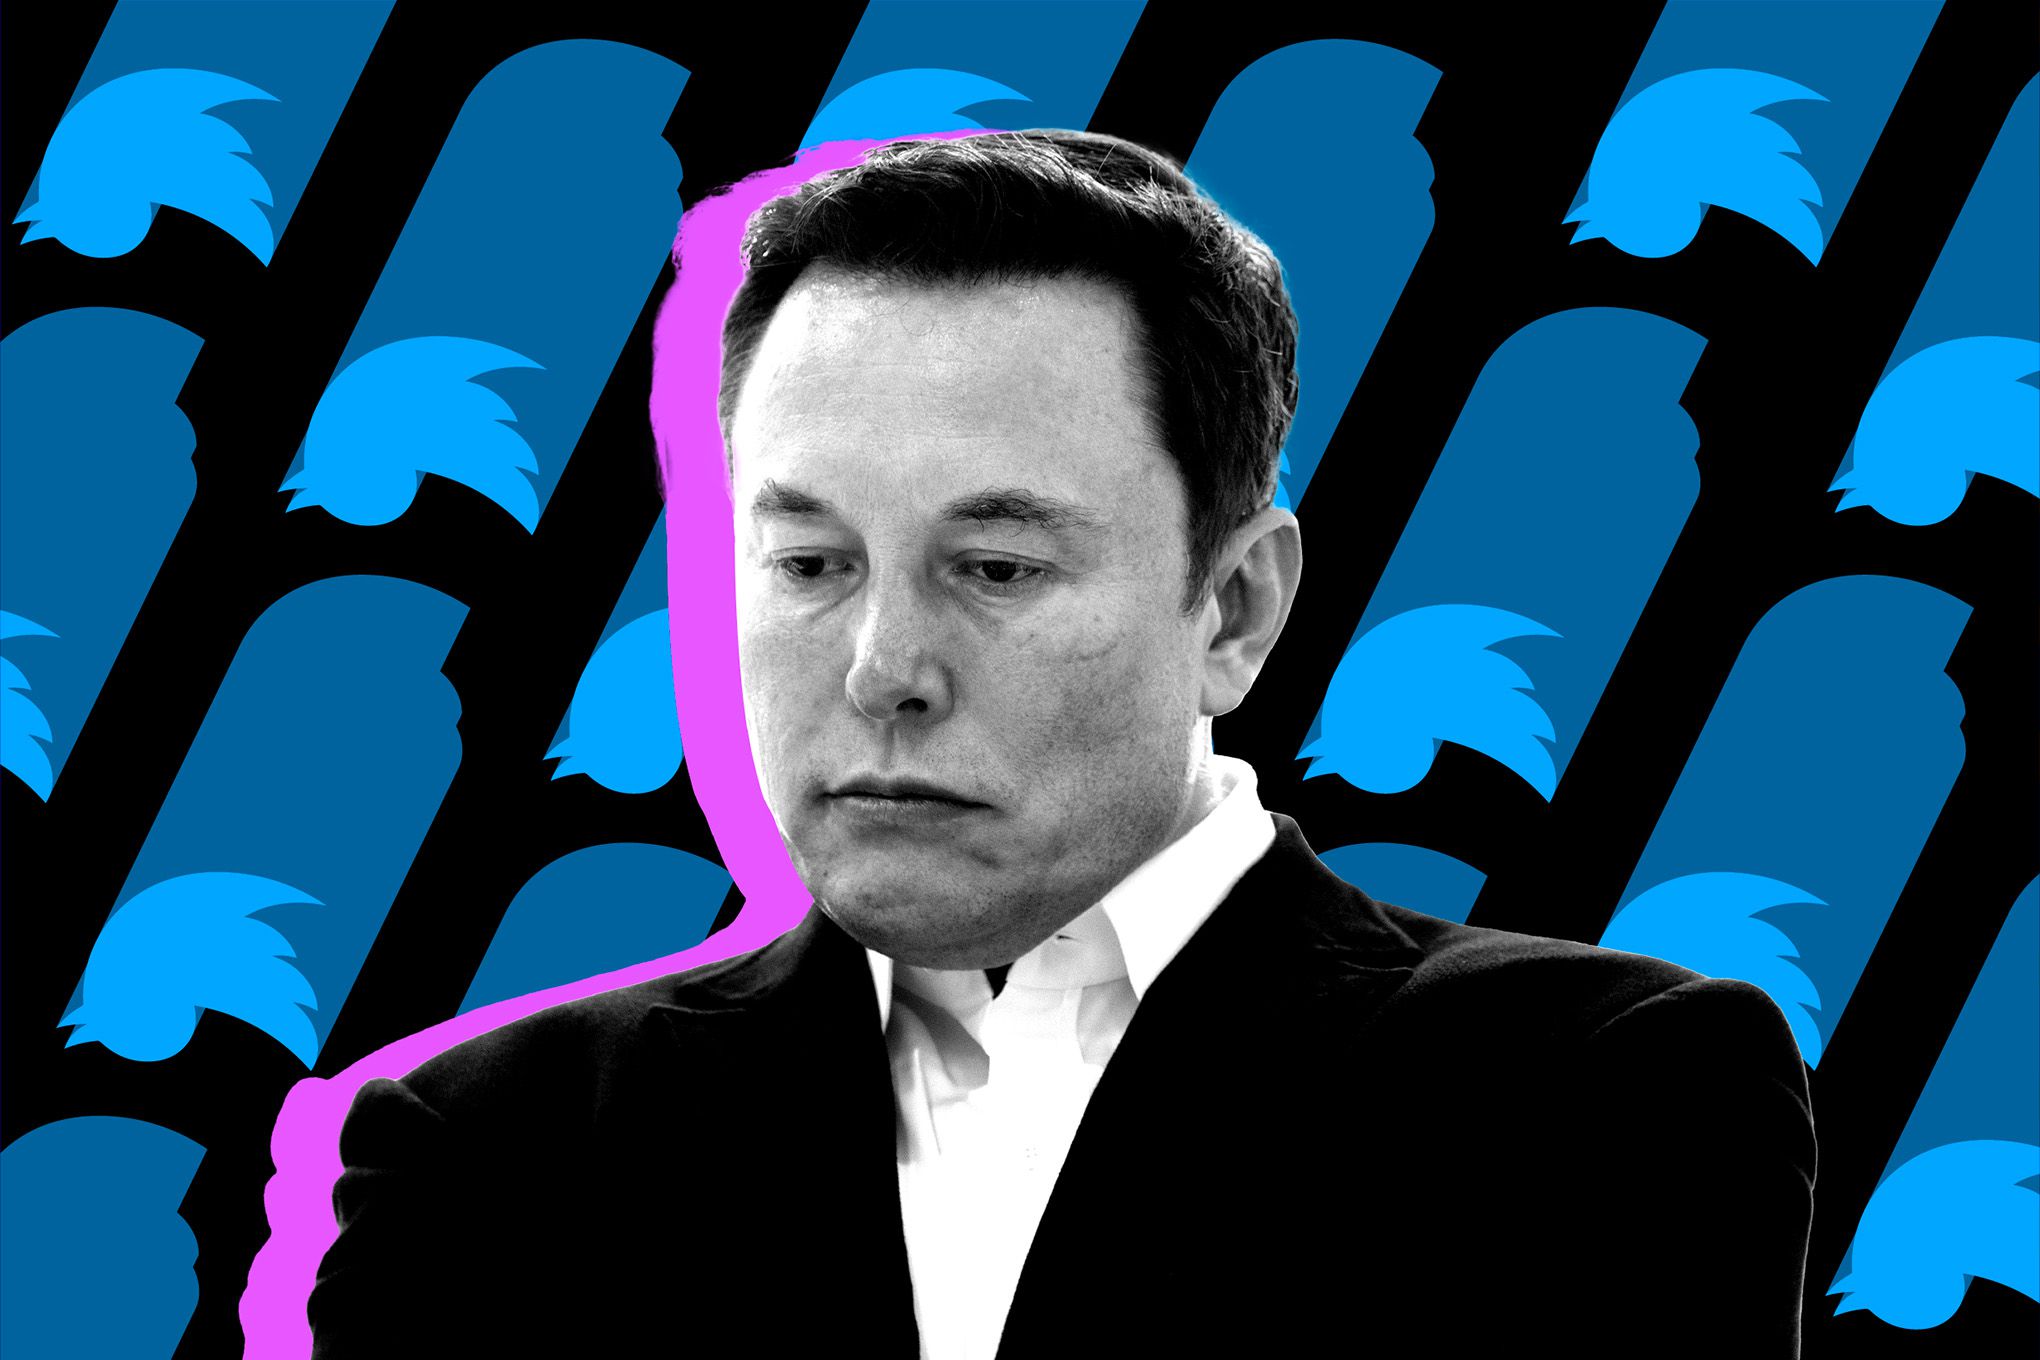 Twitter notar atkvæði til að reka Elon Musk